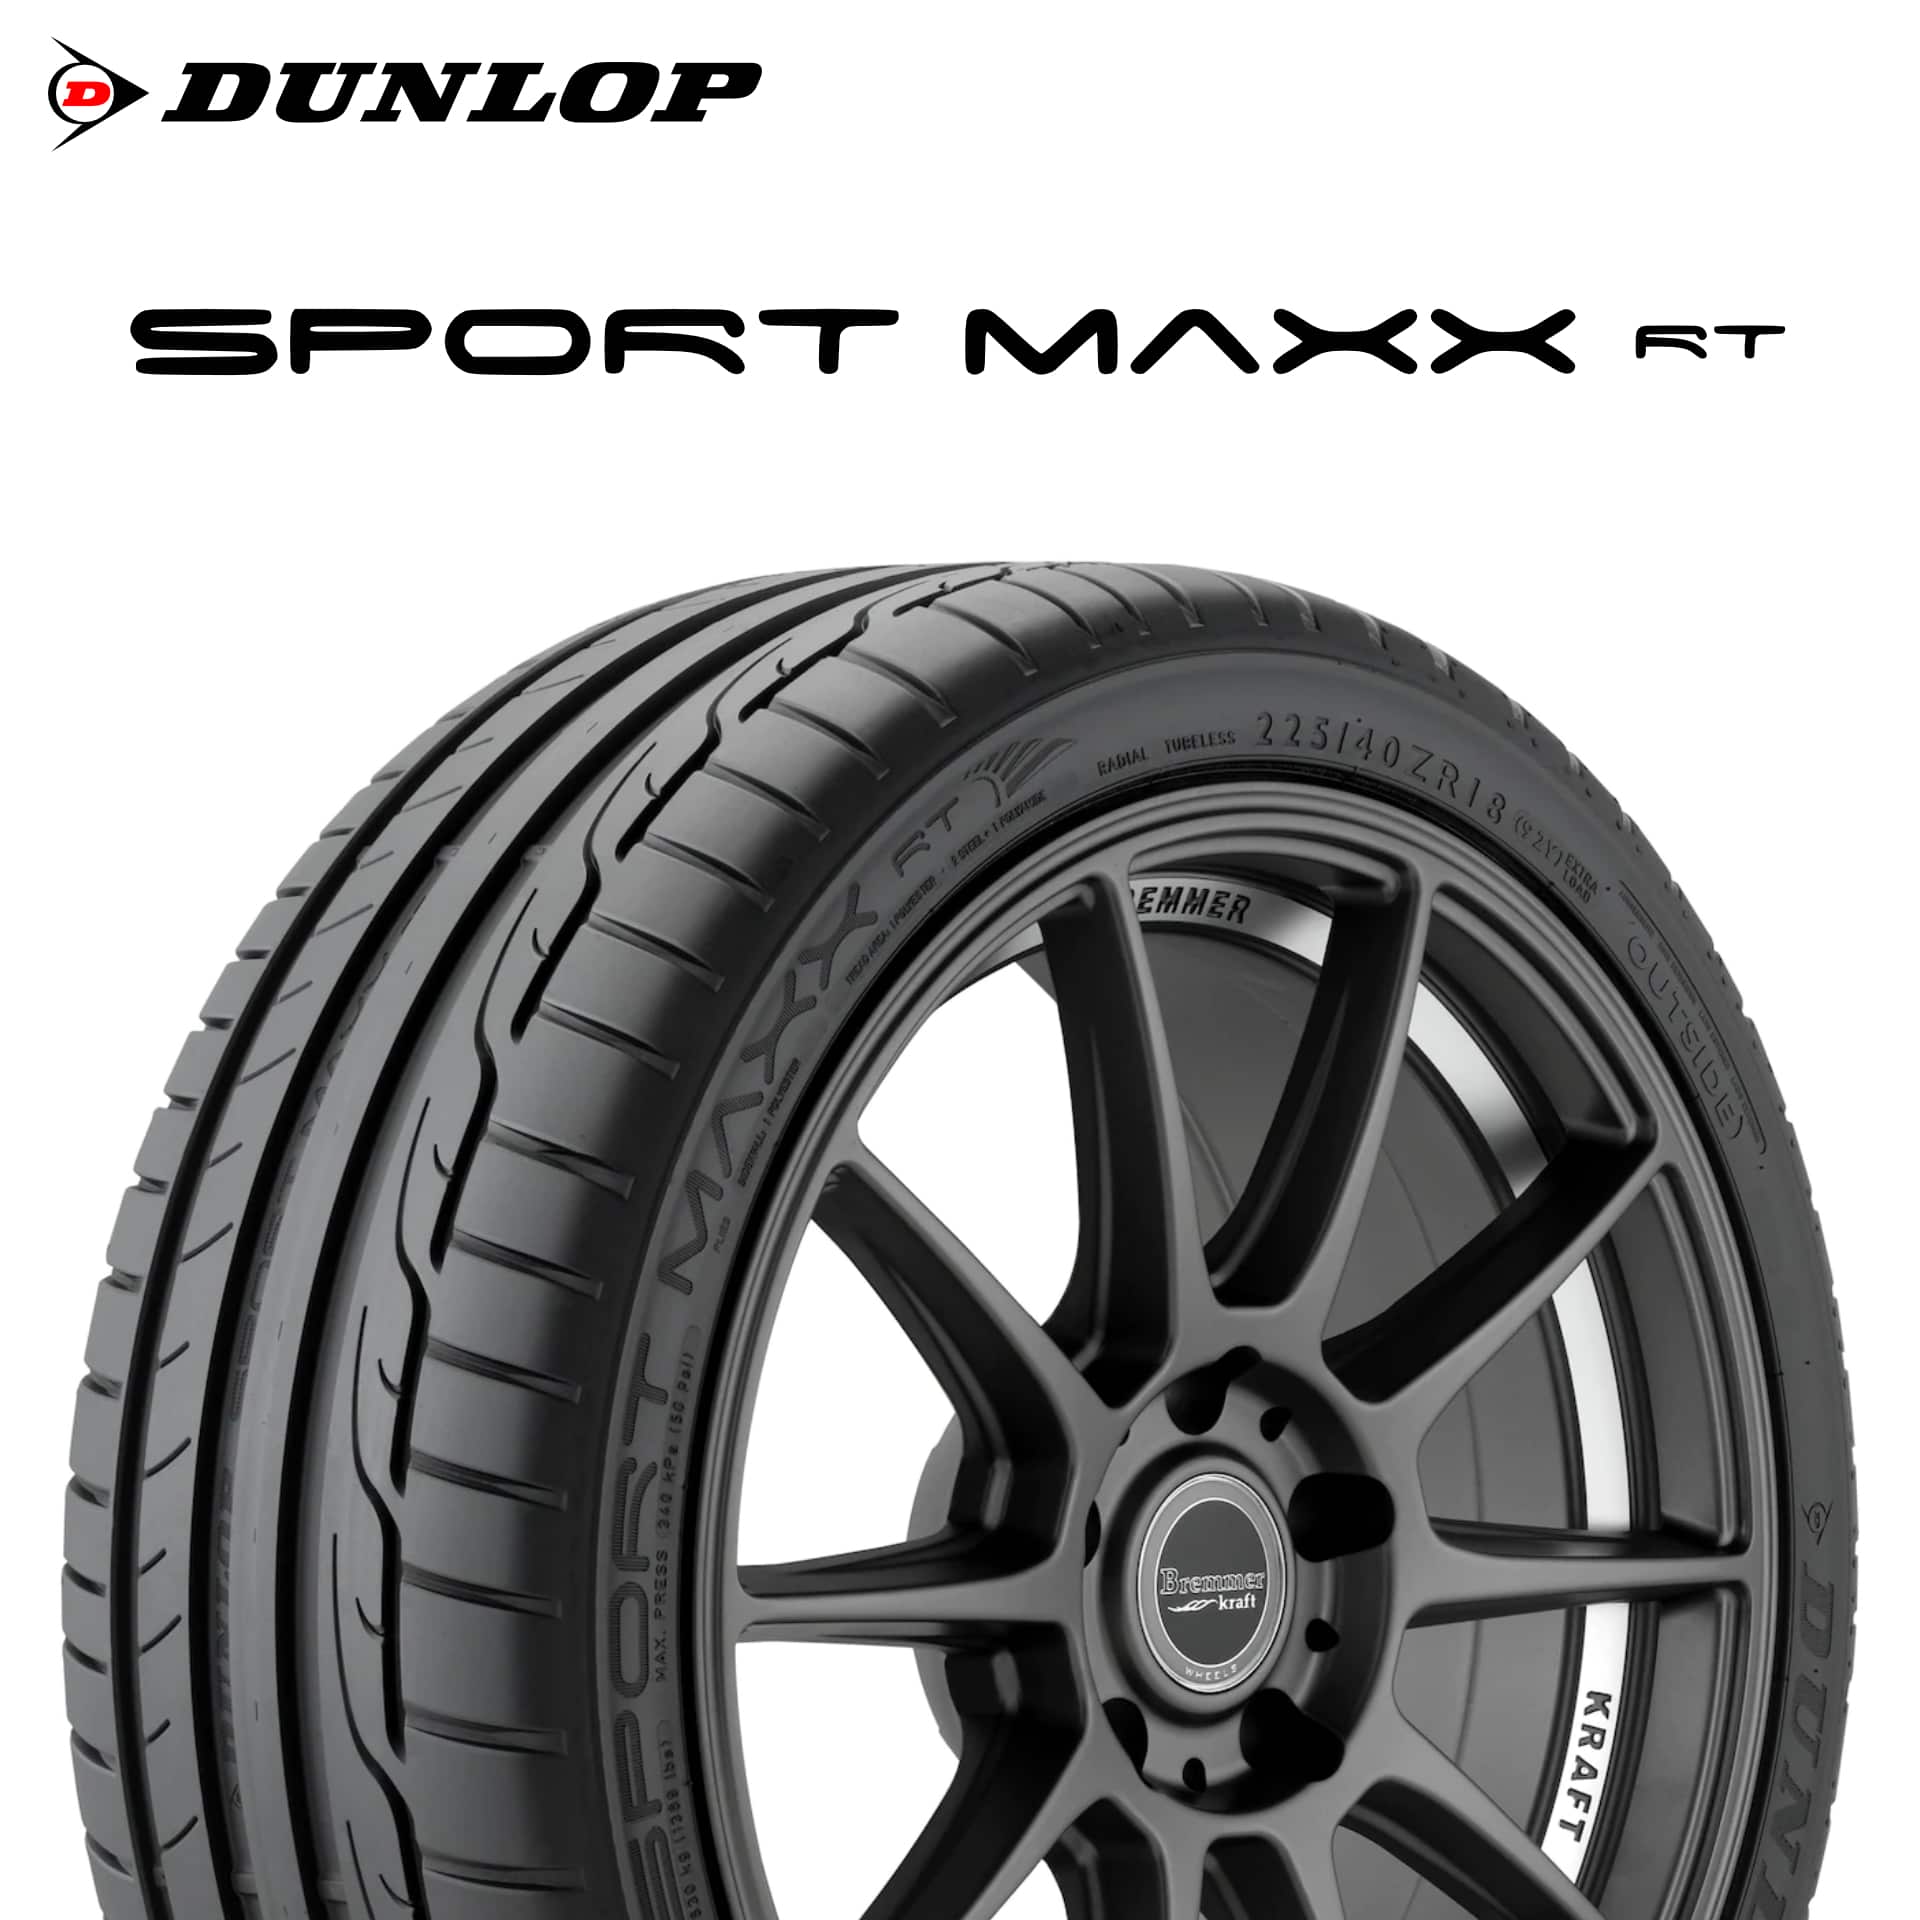 23年製 245/35R19 (93Y) XL MO1 ダンロップ SPORT MAXX RT スポーツマックスRT メルセデスベンツ承認タイヤ 単品